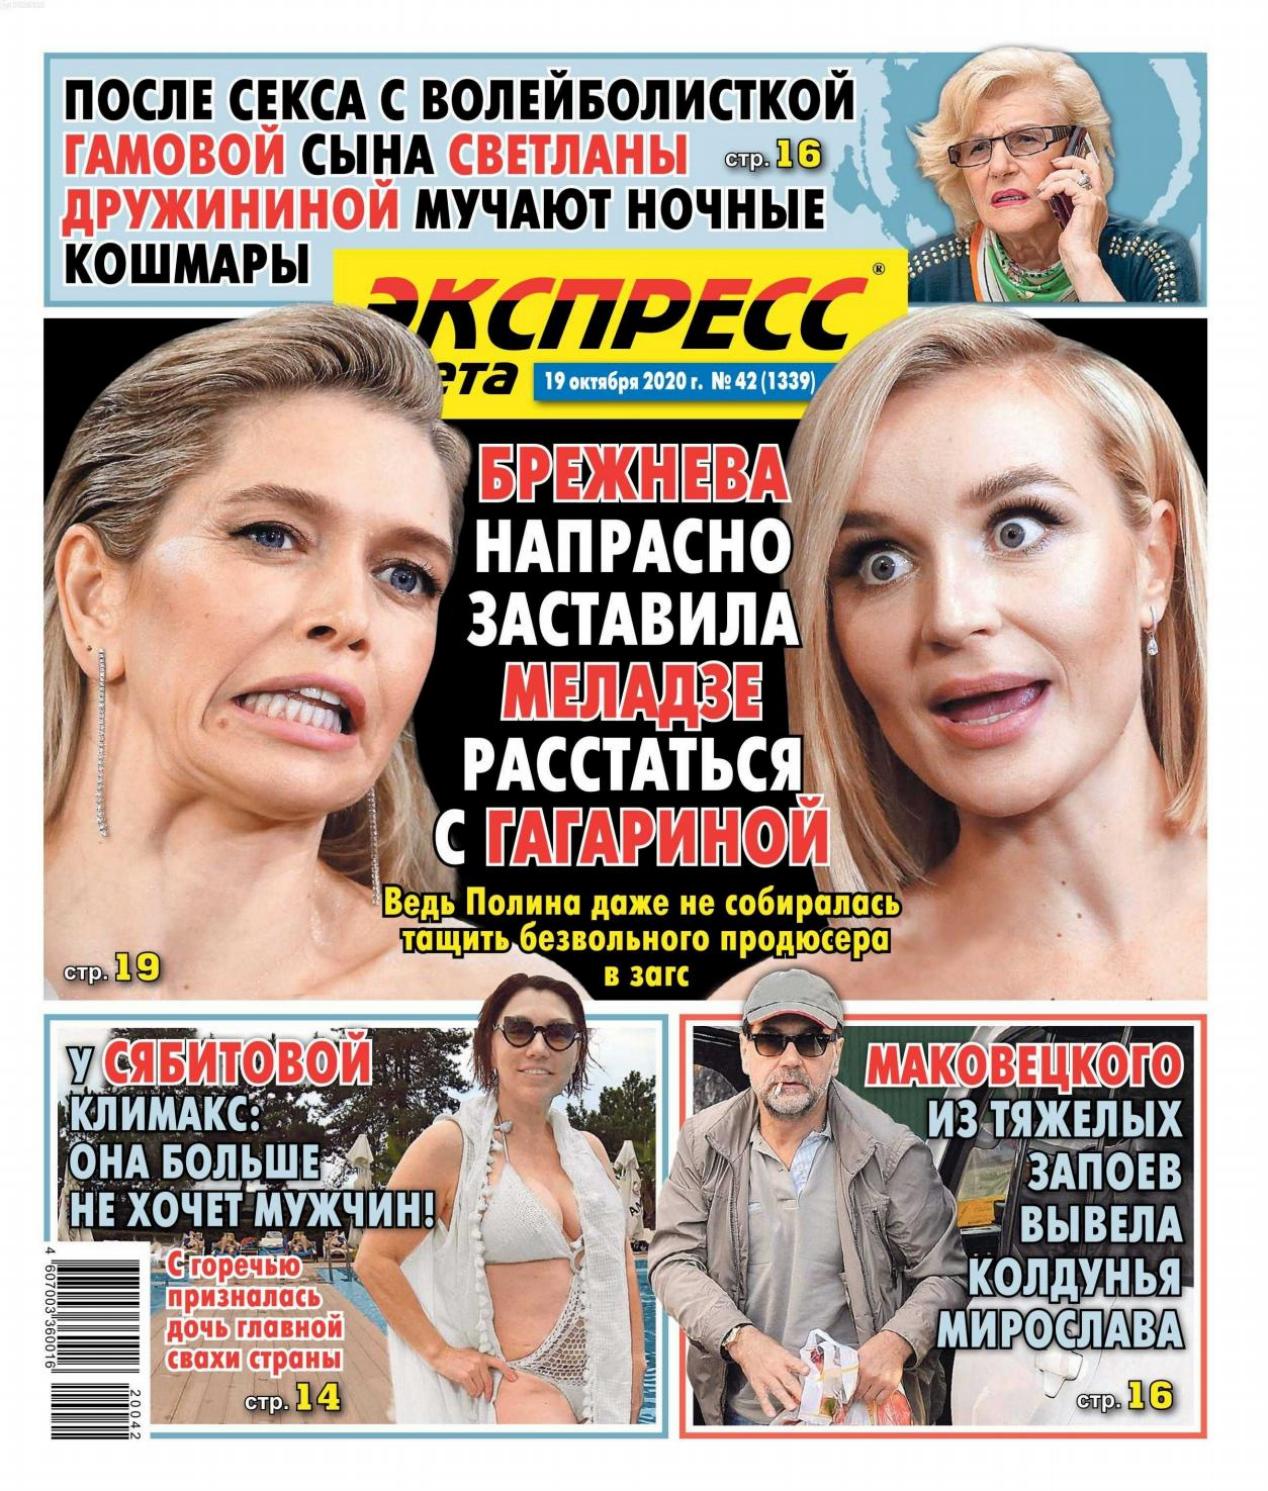 Экспресс газета №42, октябрь 2020